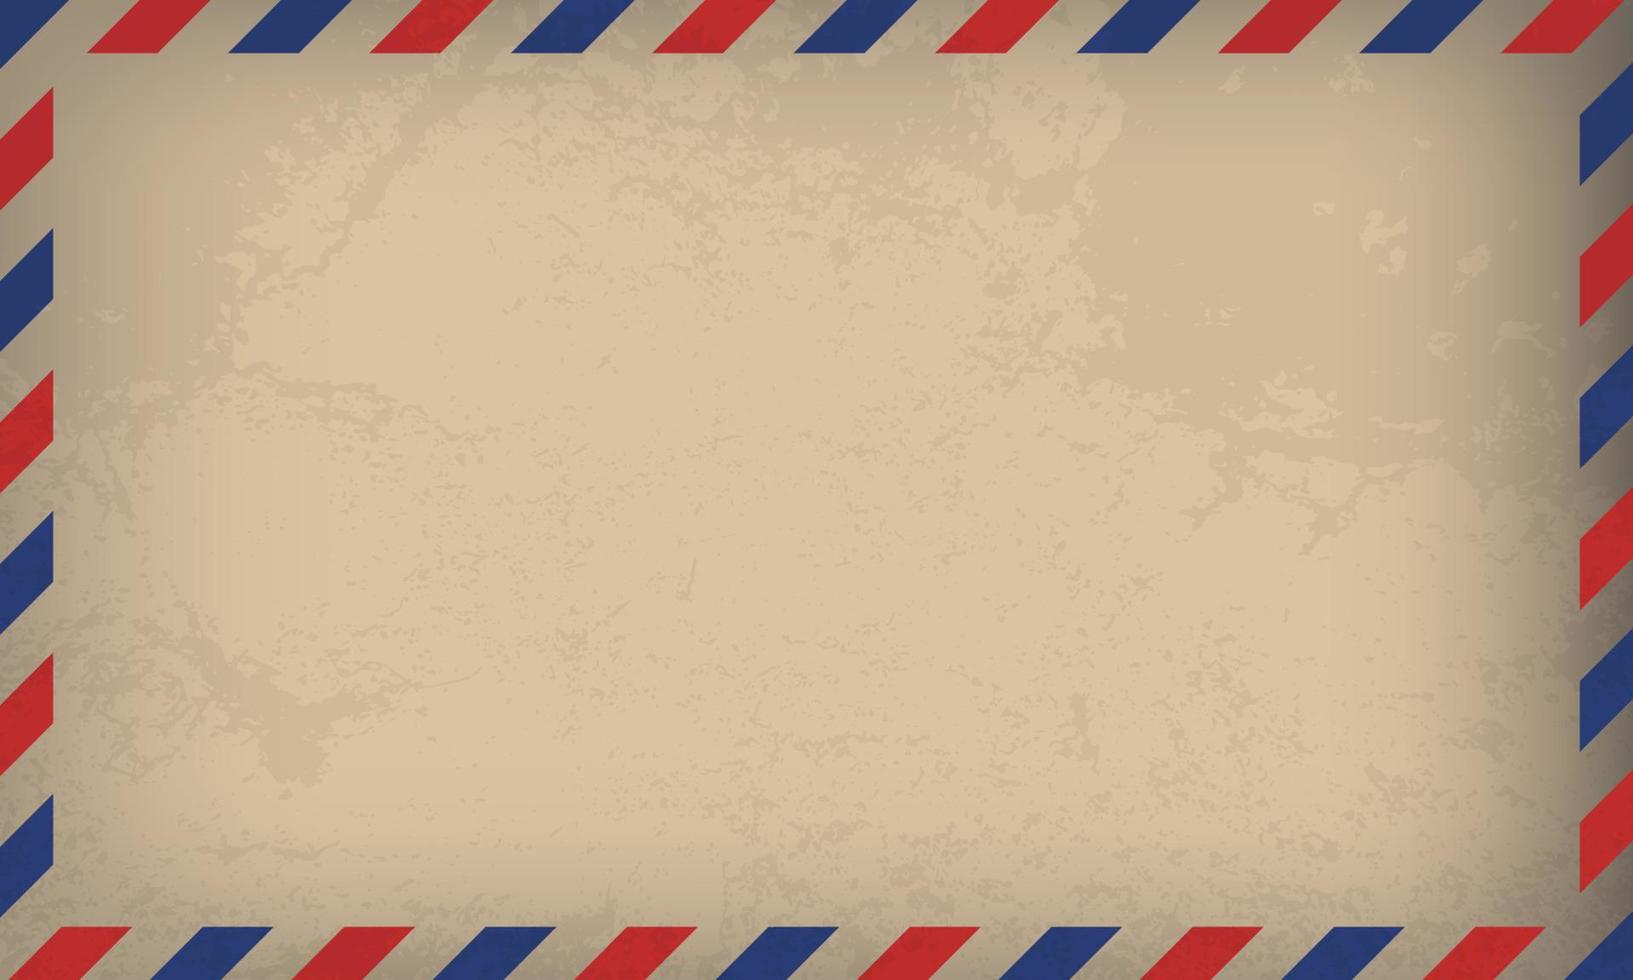 carta de correio aéreo. selo de correio. postal de quadro de correio aéreo. padrão de listras vermelhas azuis. envelope de modelo de maquete. ilustração vetorial vetor